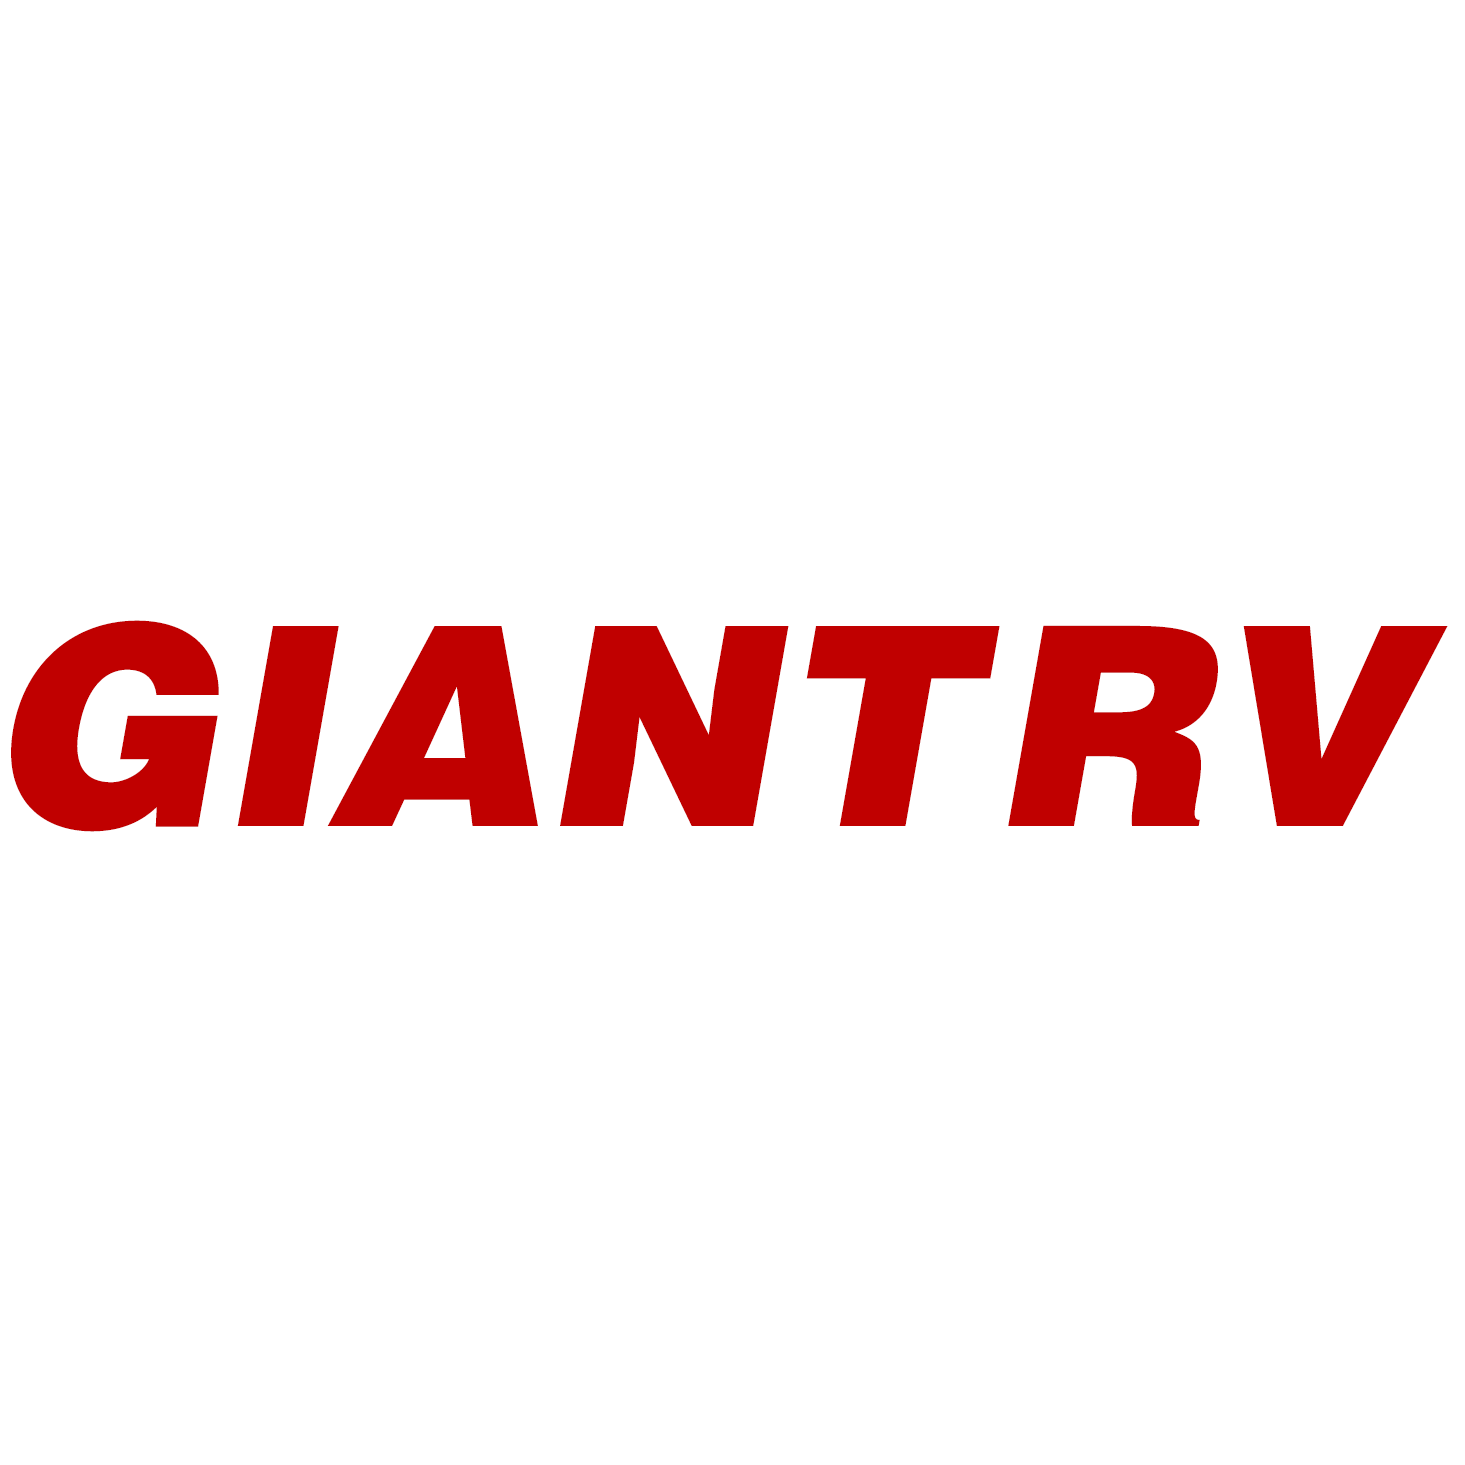 Giant RV Photo